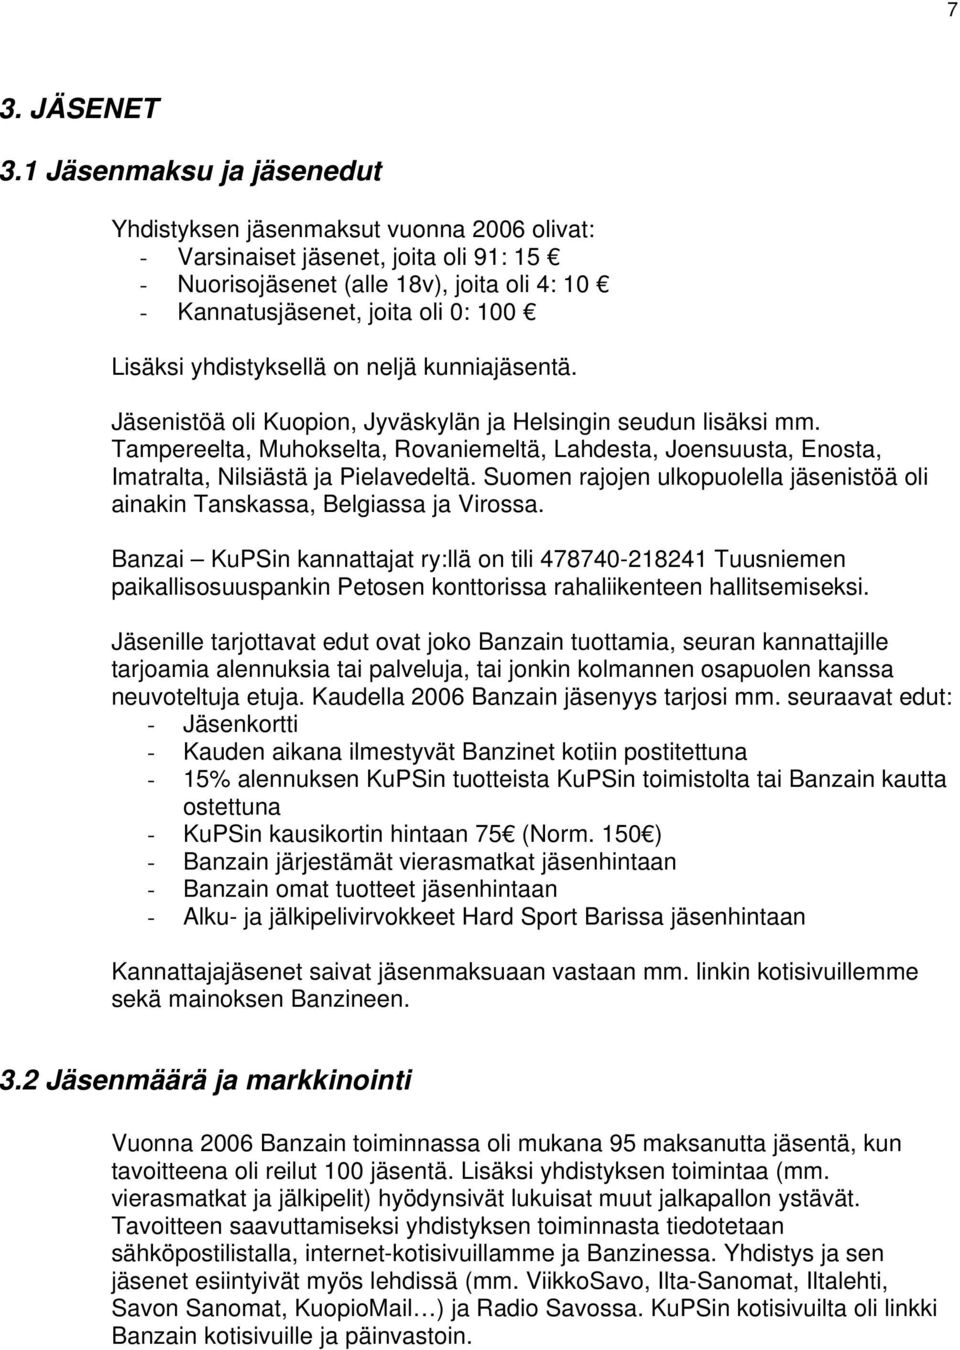 yhdistyksellä on neljä kunniajäsentä. Jäsenistöä oli Kuopion, Jyväskylän ja Helsingin seudun lisäksi mm.